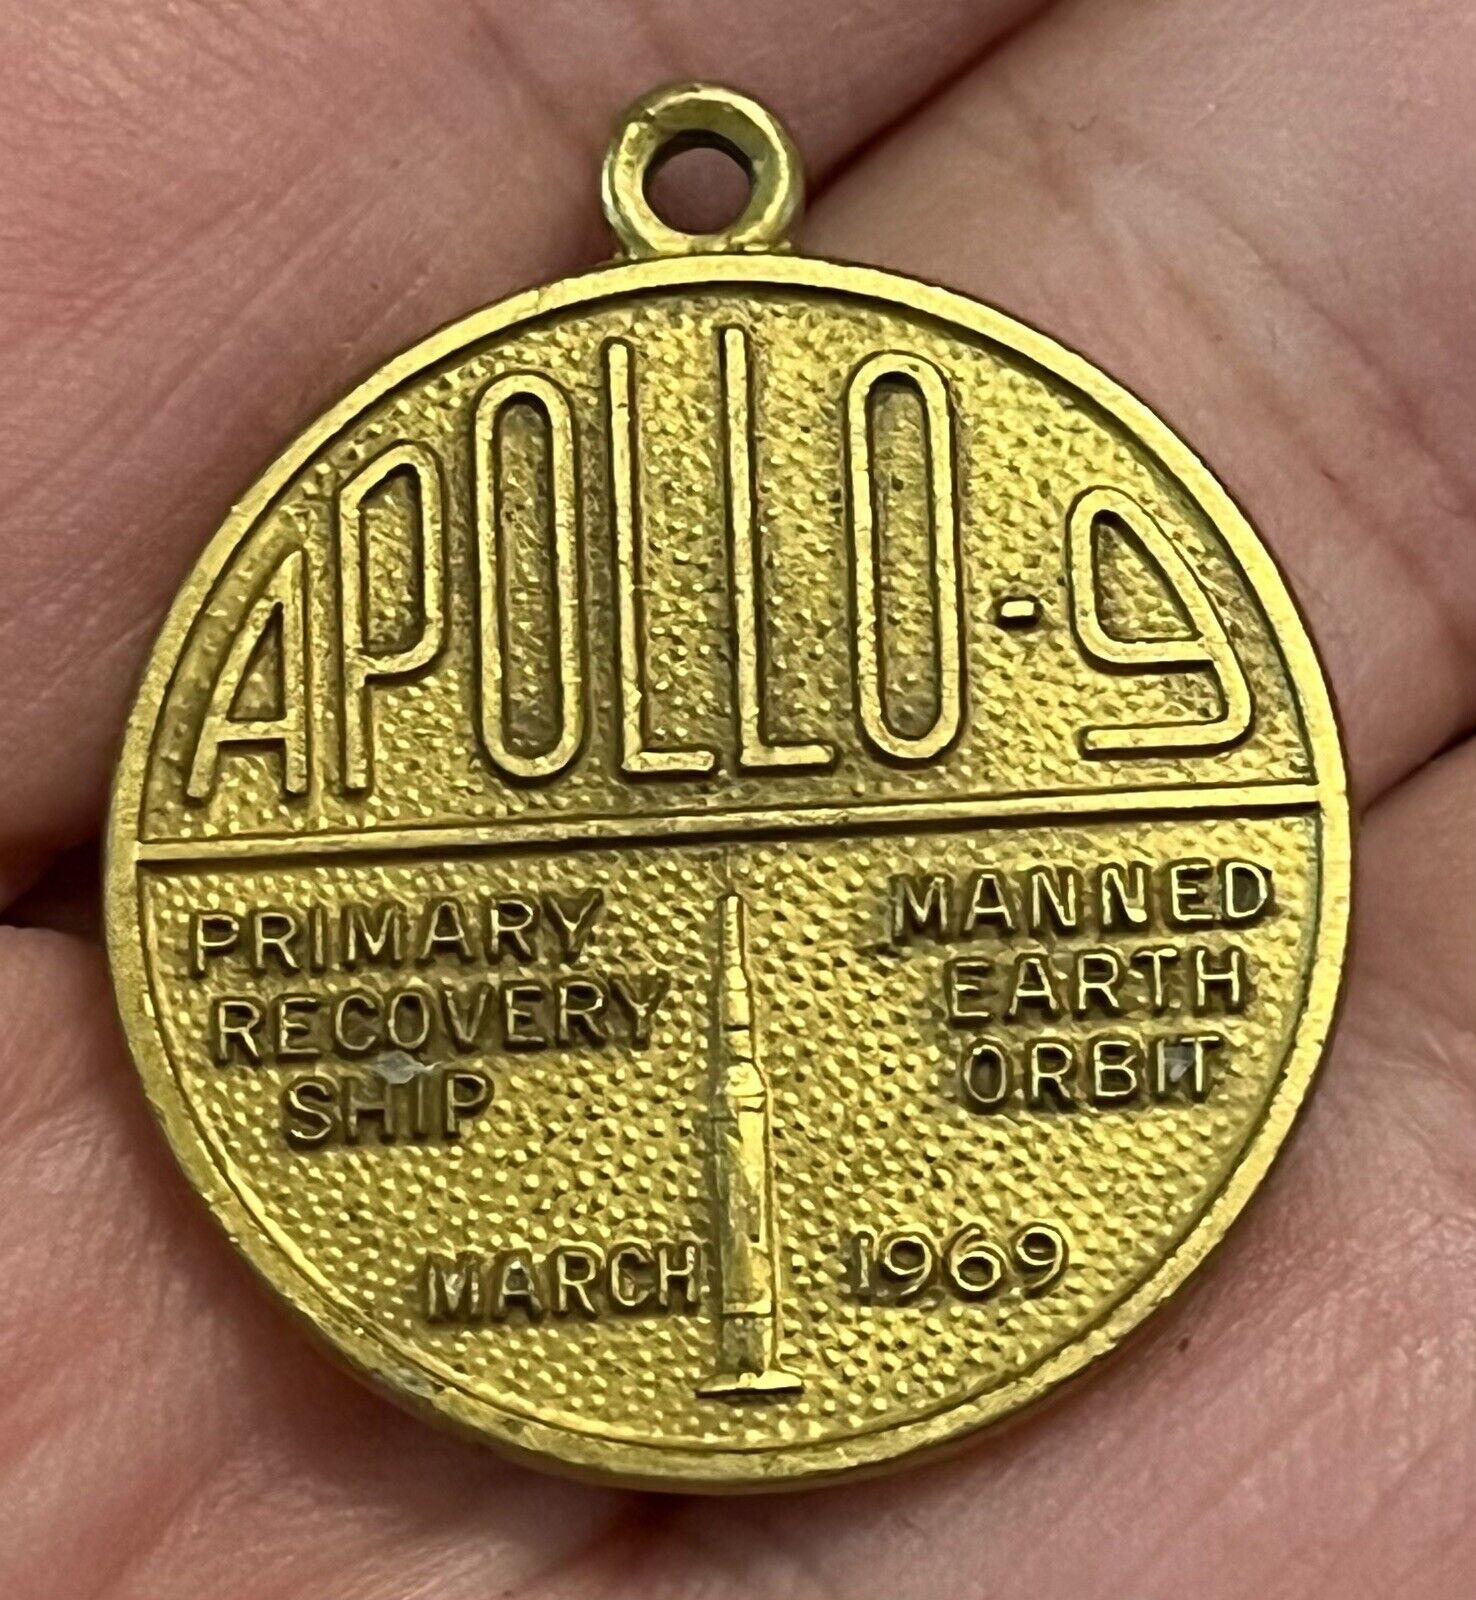 Rare 1969 Medal USS Guadalcanal Apollo 9 Recovery Ship NASA